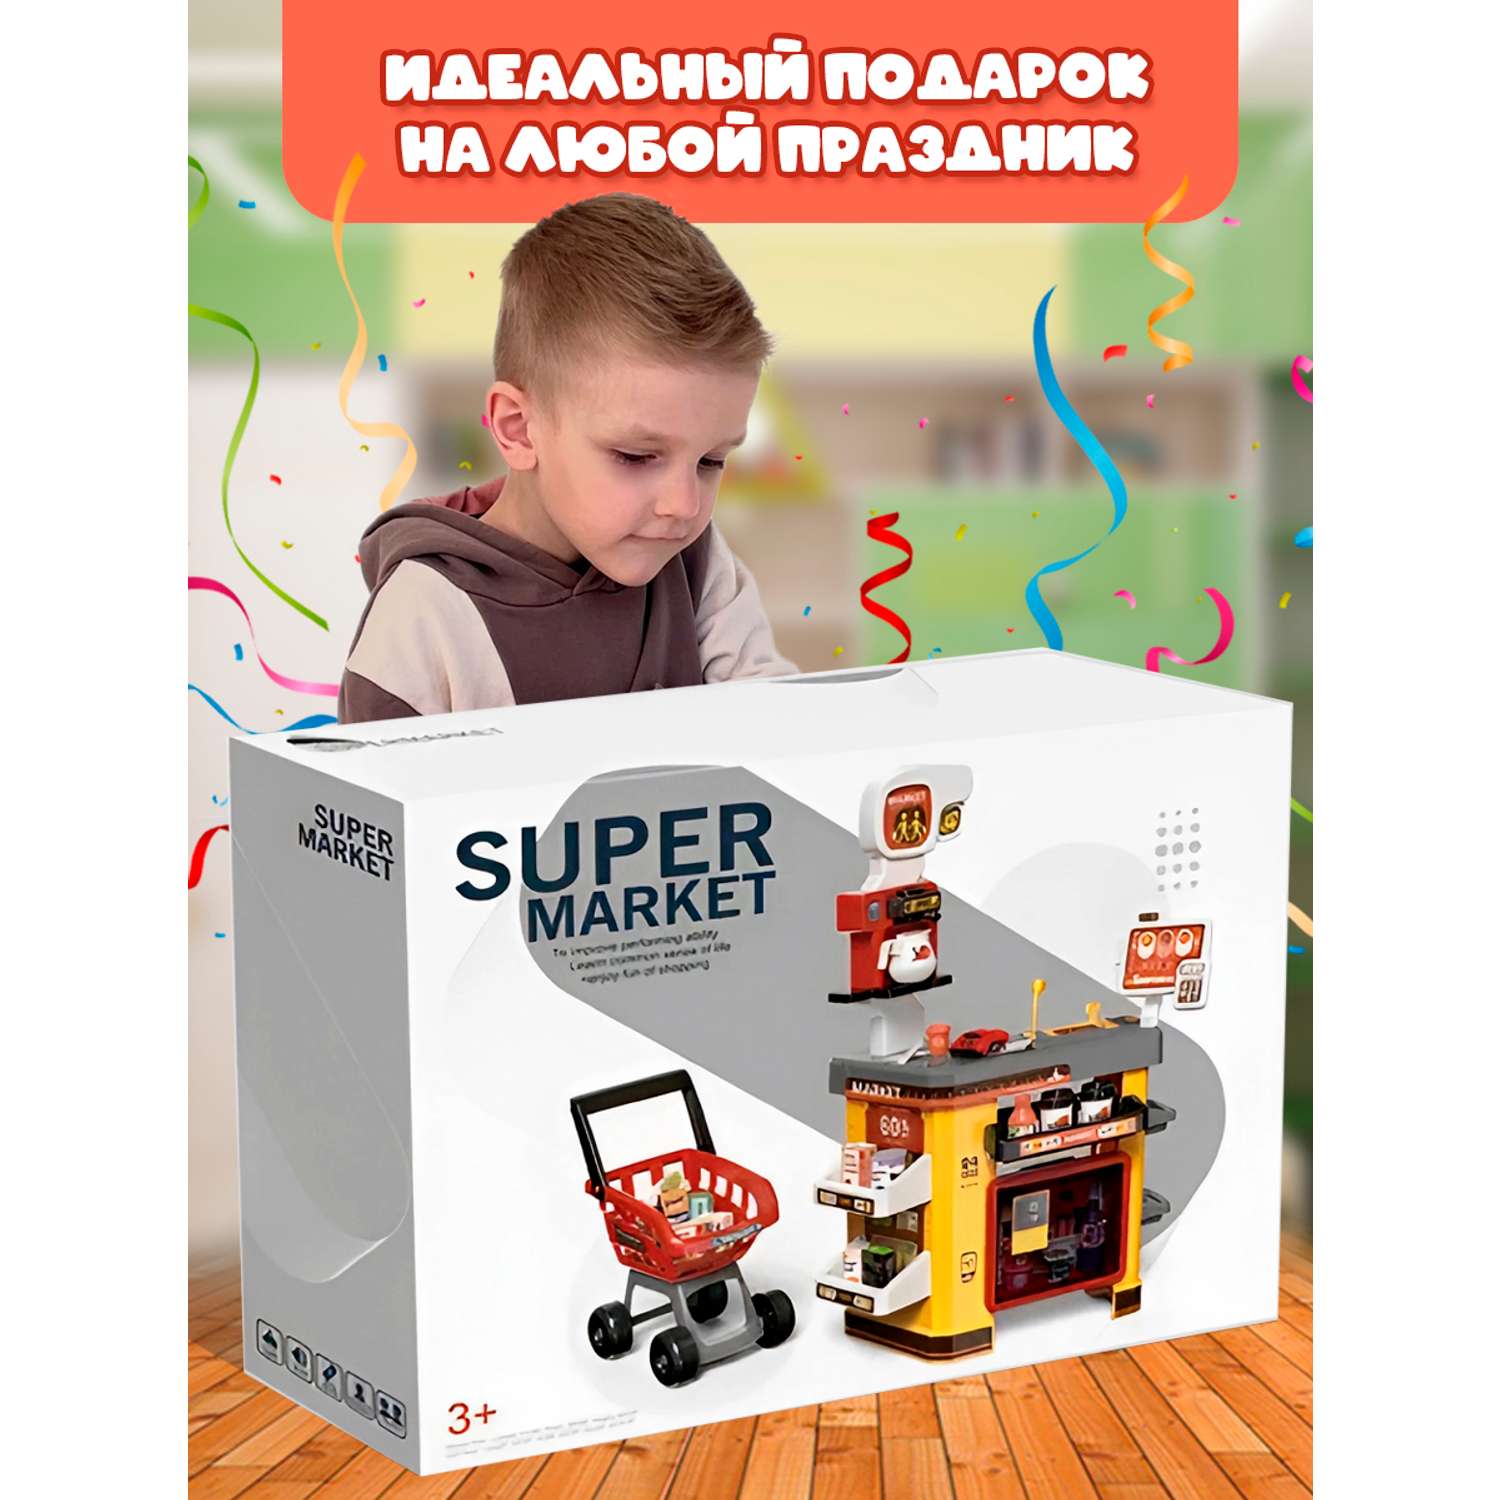 Игровой набор Зайка любит супермаркет со светом и звуком - фото 12